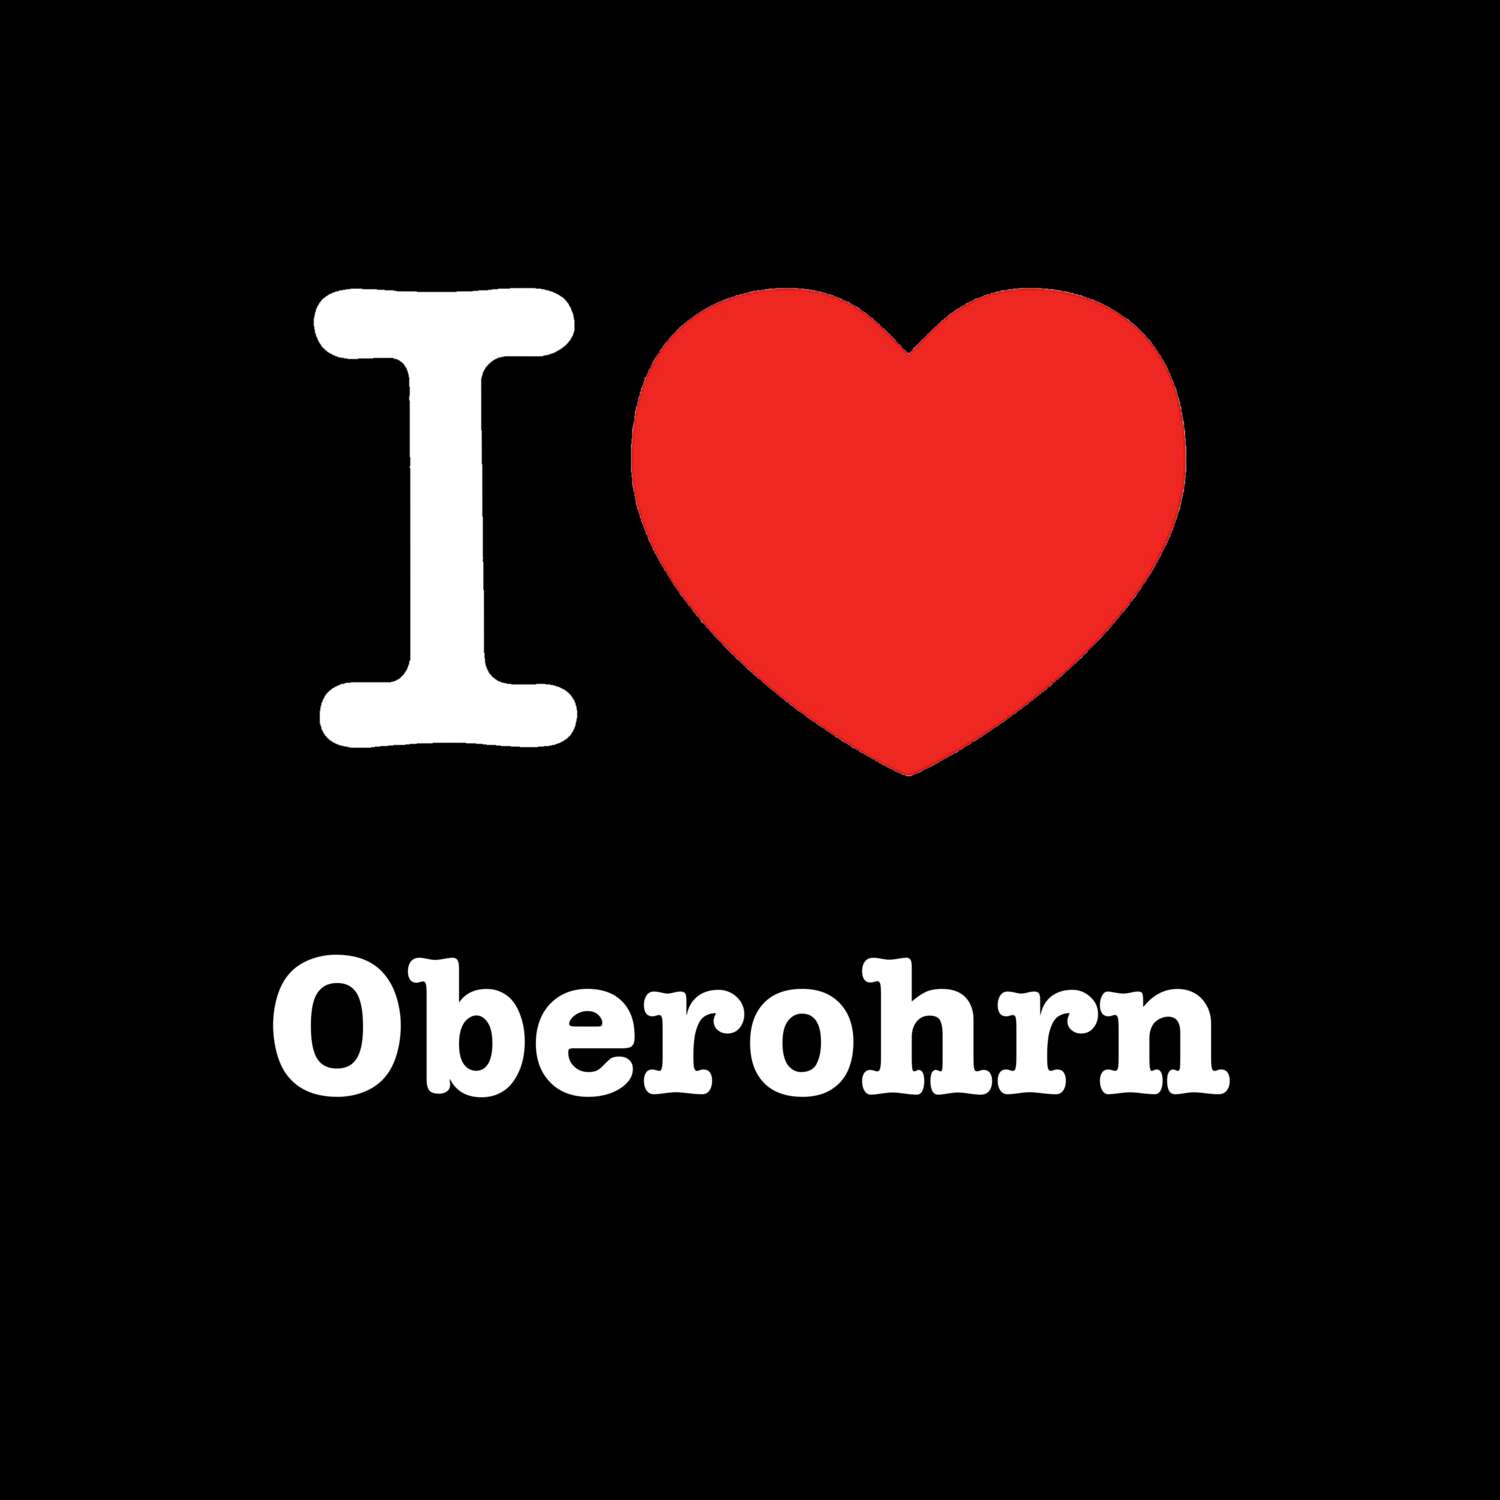 Oberohrn T-Shirt »I love«